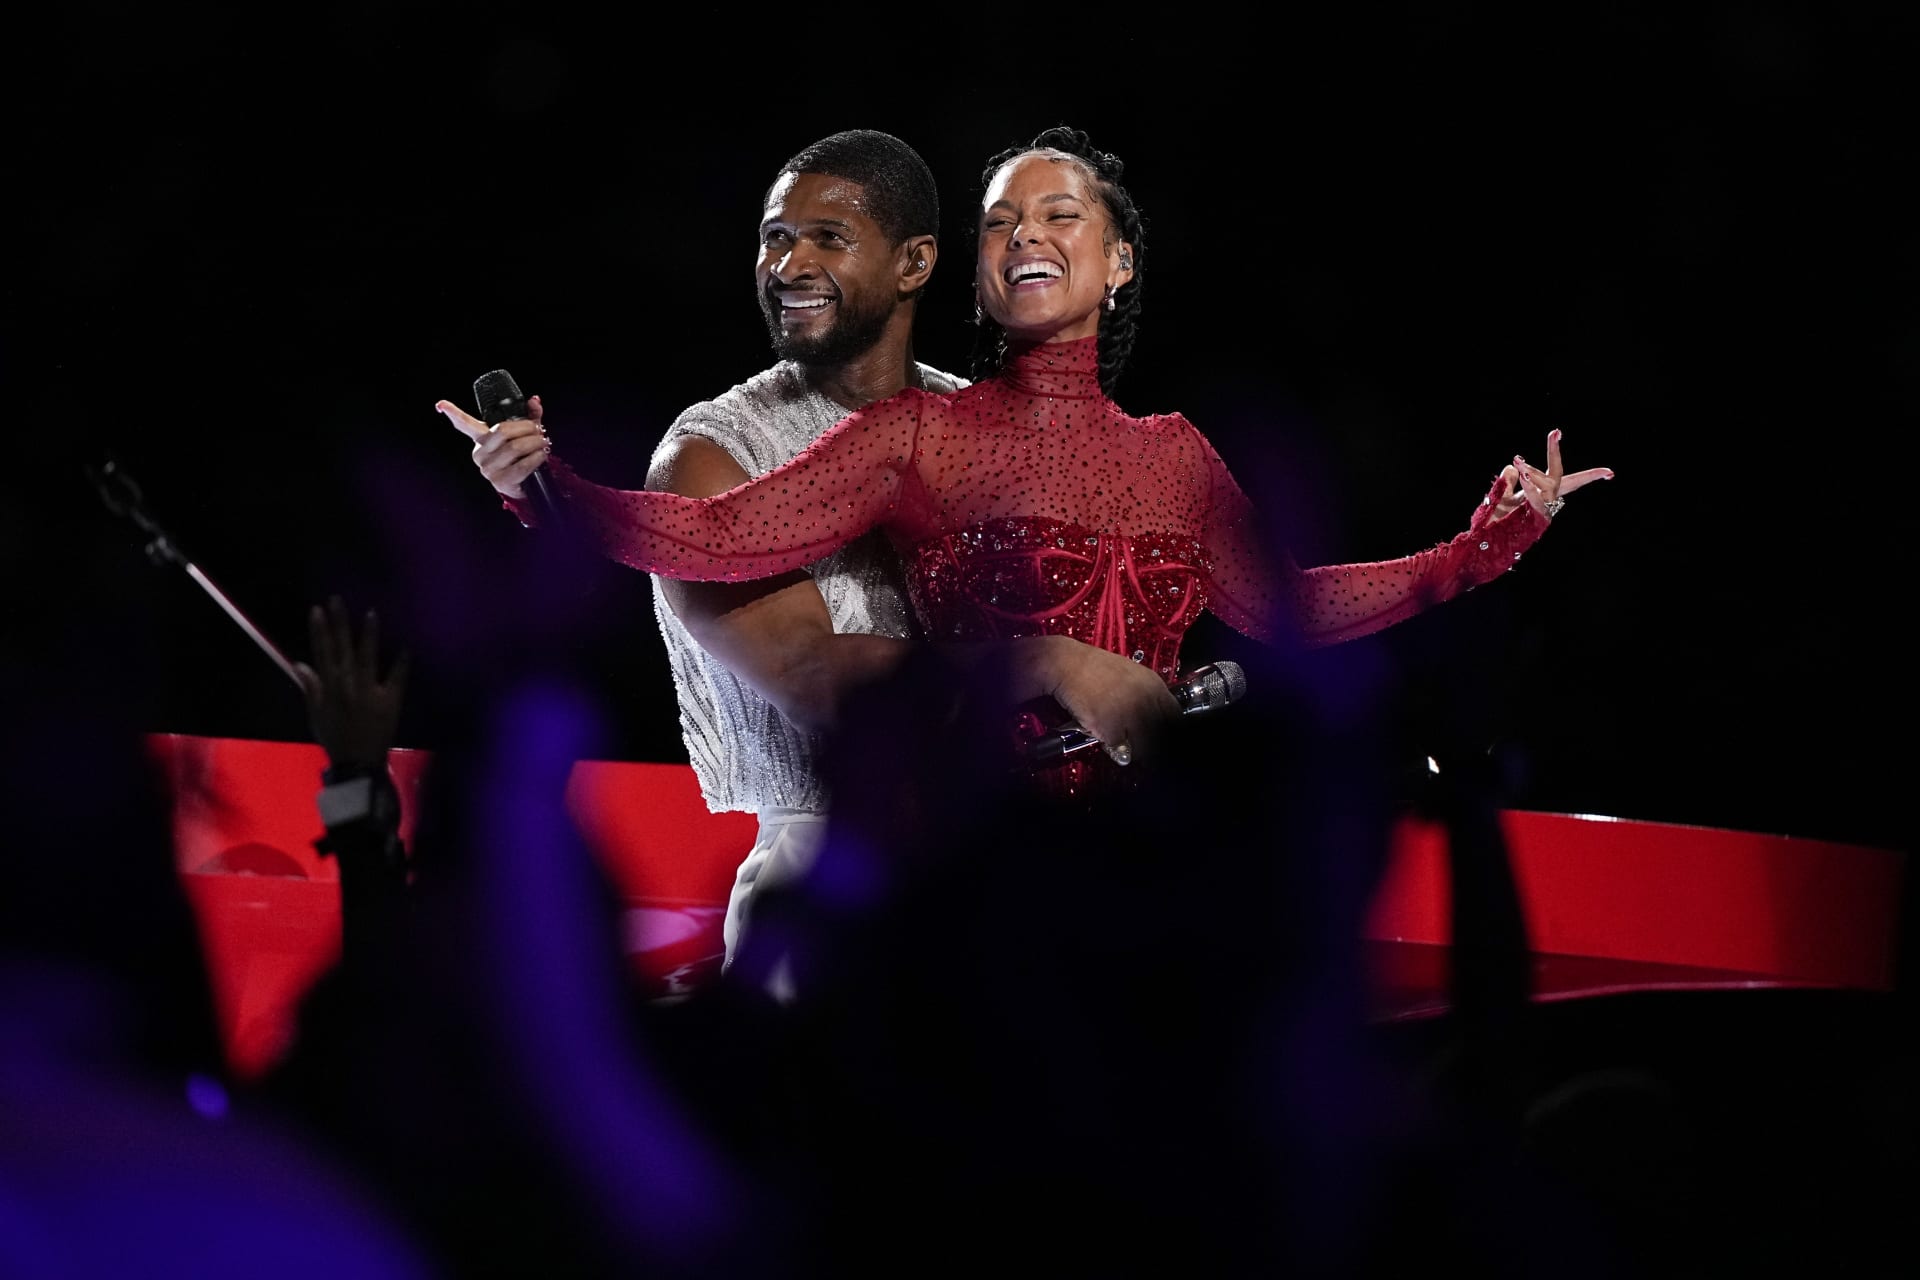 Zpěvák Usher vystoupil v poločase společně s Alicií Keys.